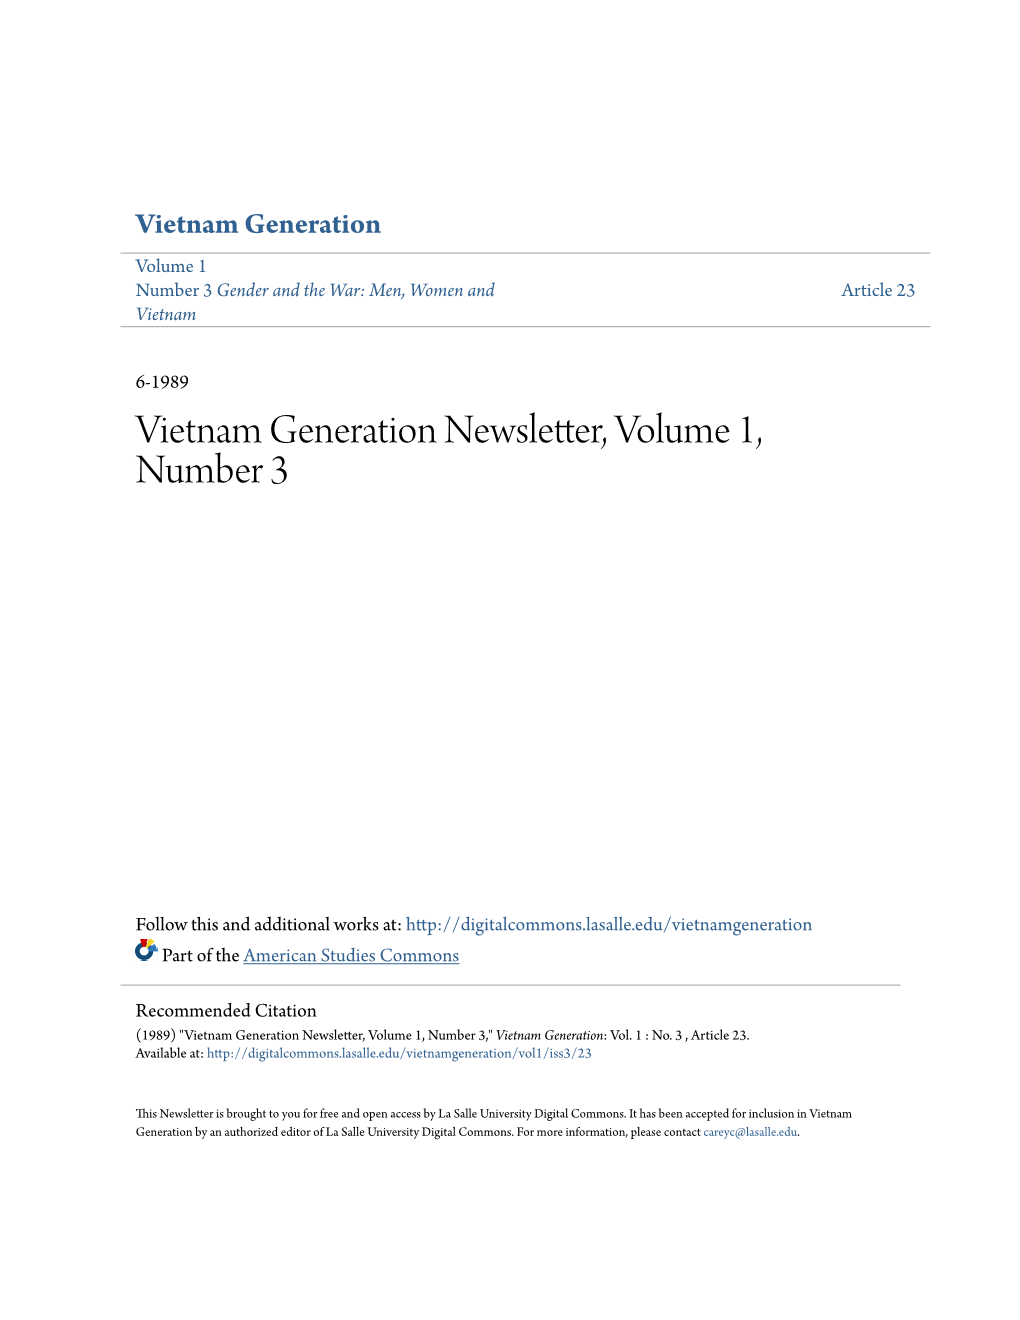 Vietnam Generation Newsletter, Volume 1, Number 3